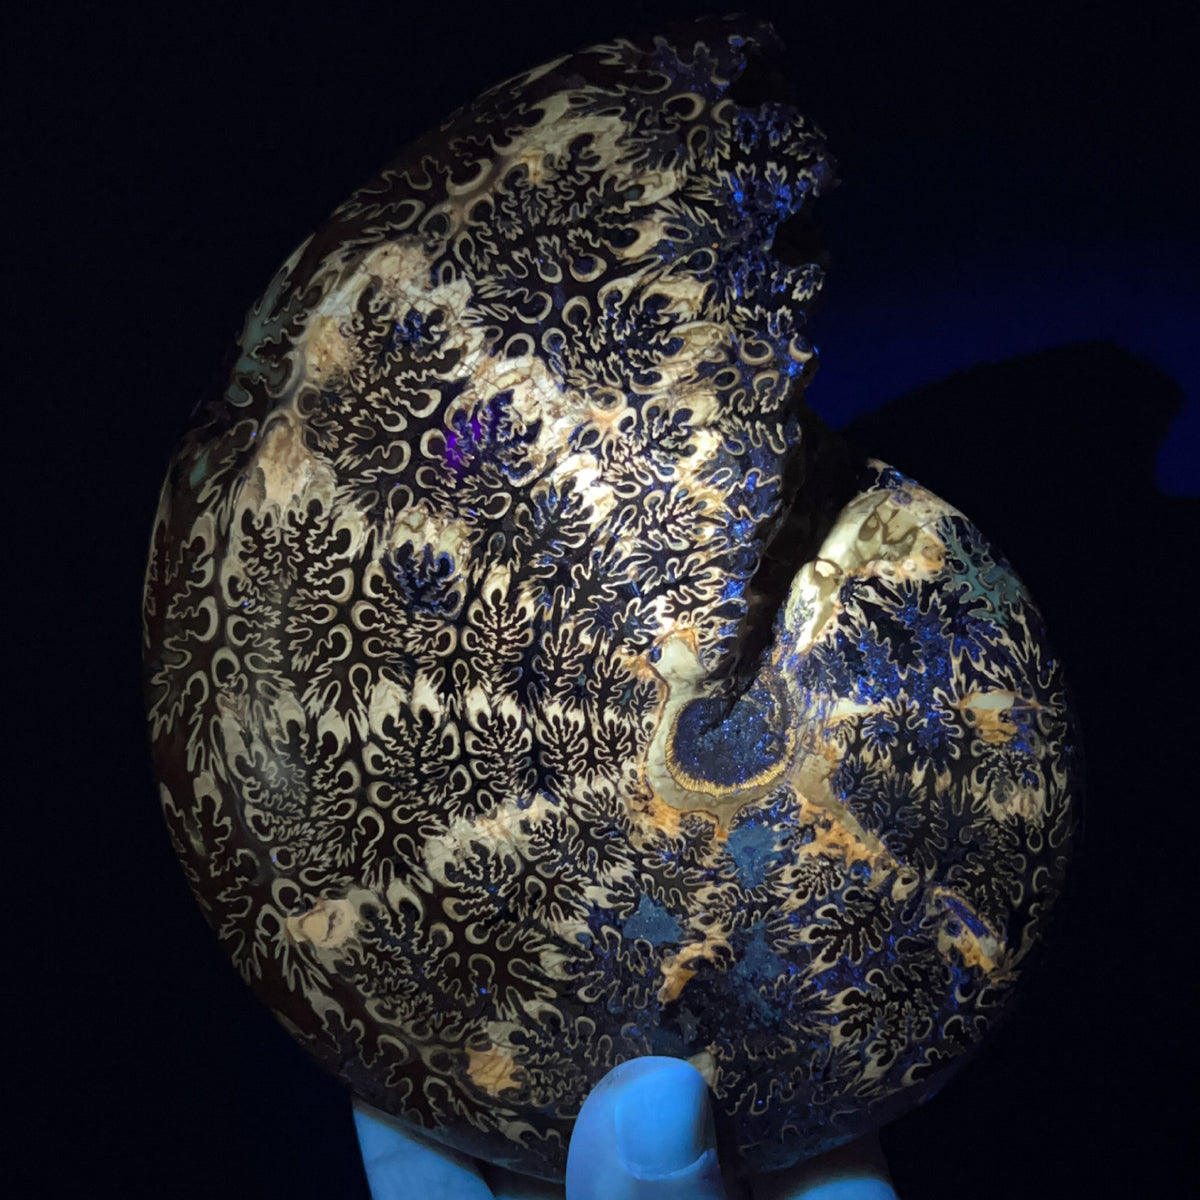 Phylloceras Ammonite under UV light